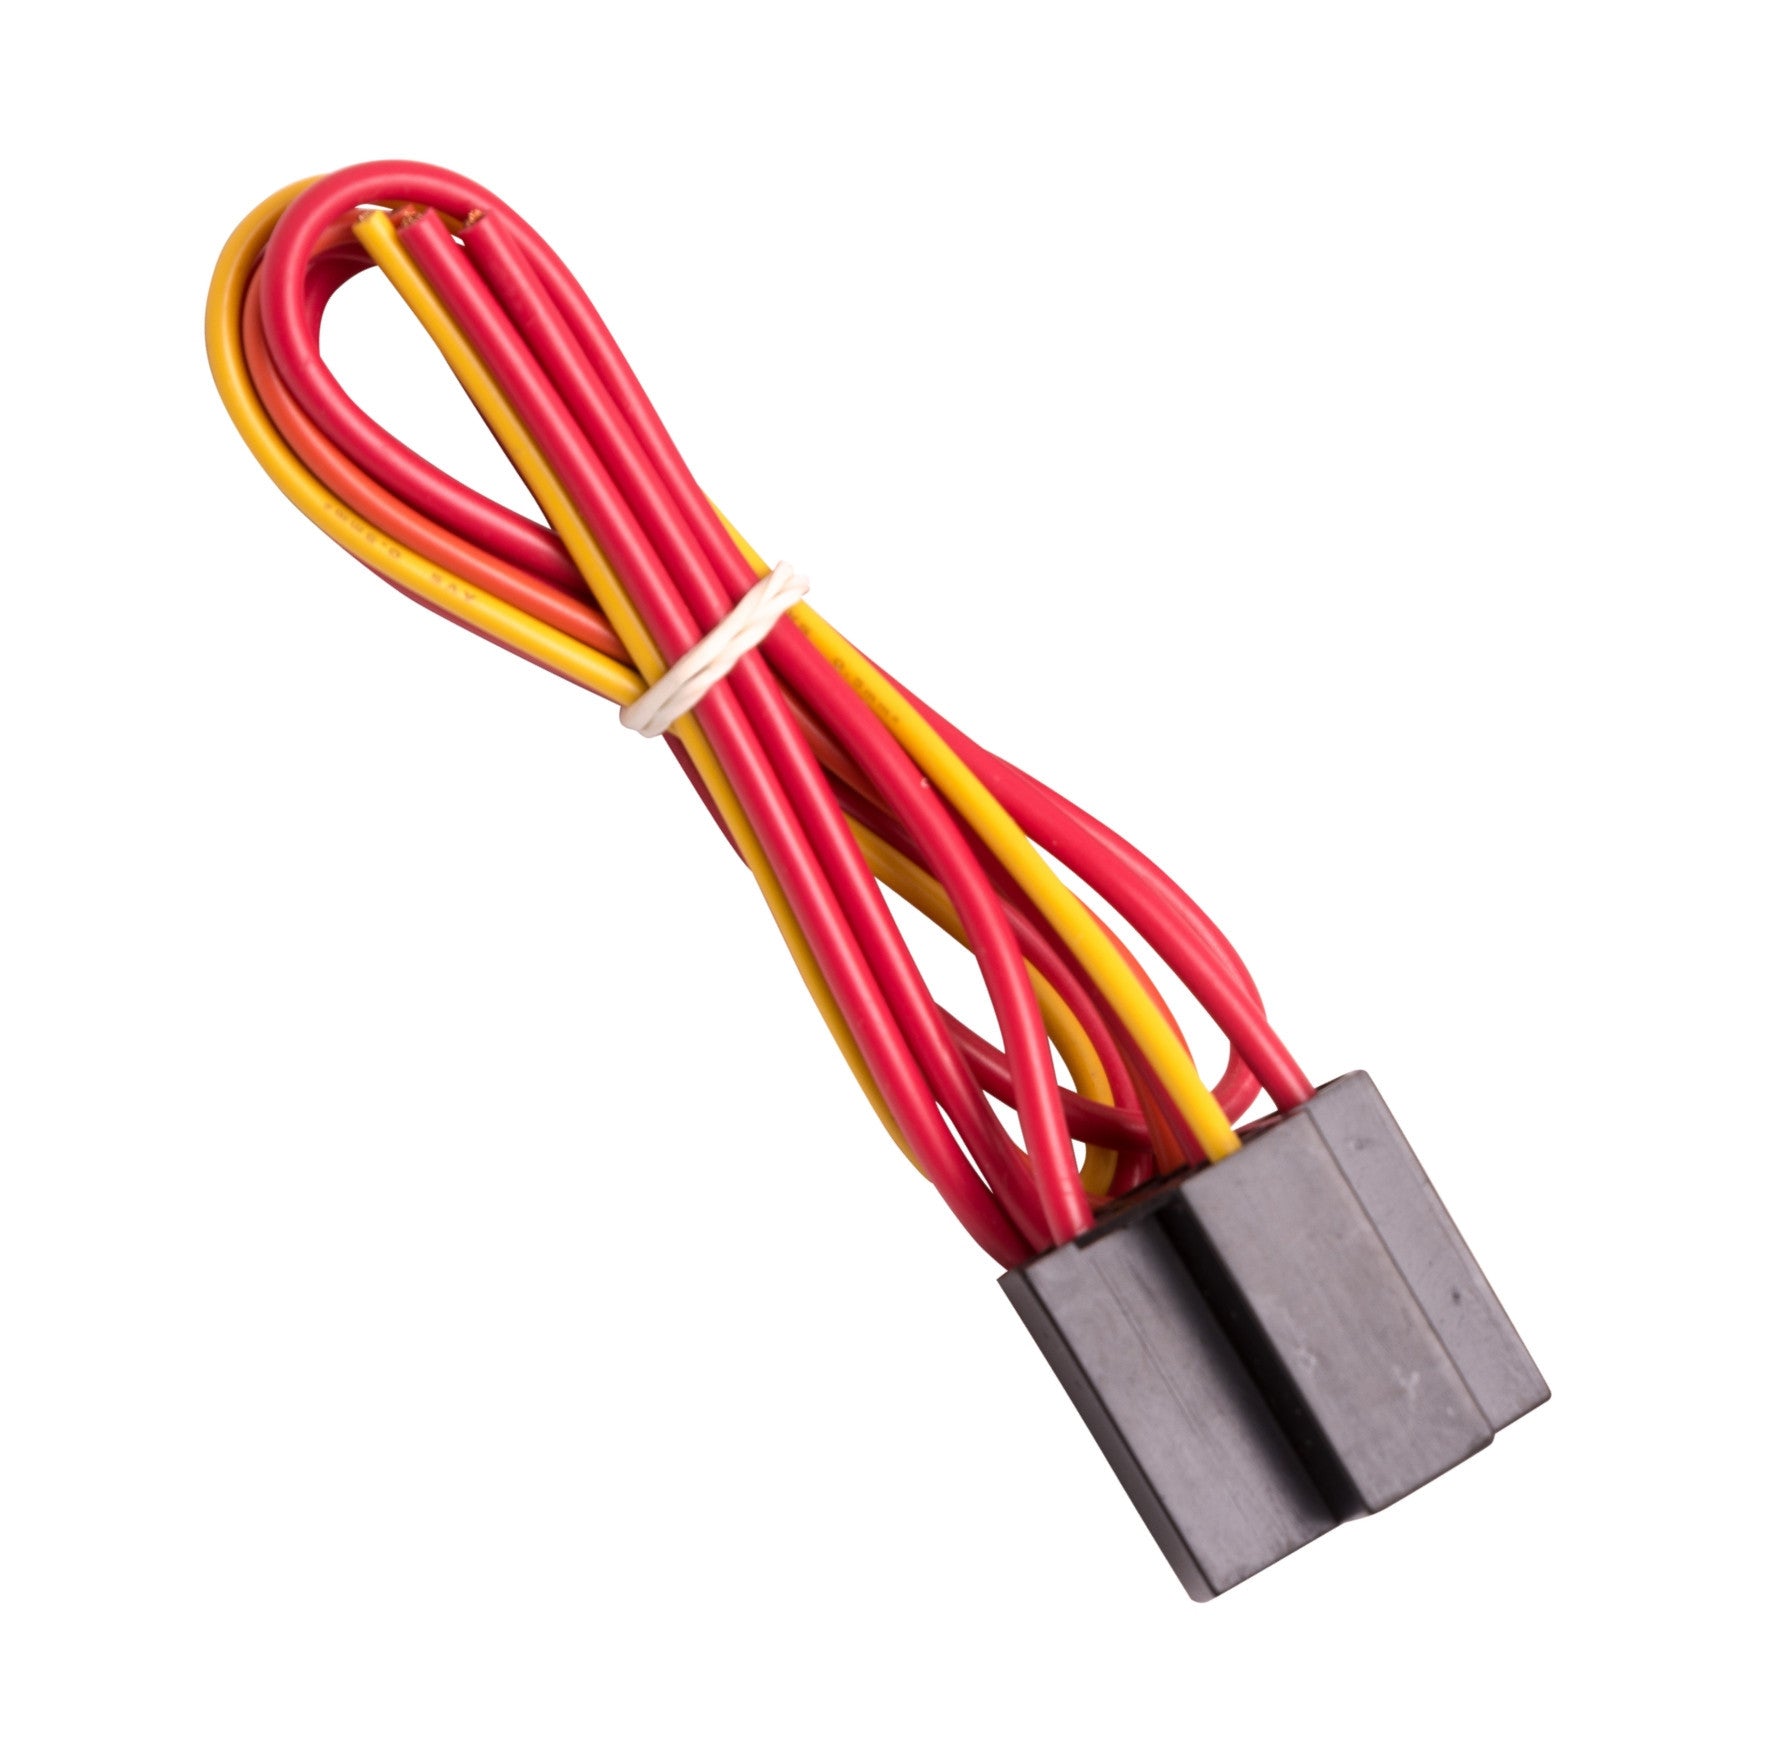 Prise unipolaire de 12 volts et faisceau de câbles pour relais unipolaire à double course (SPDT) Product Image